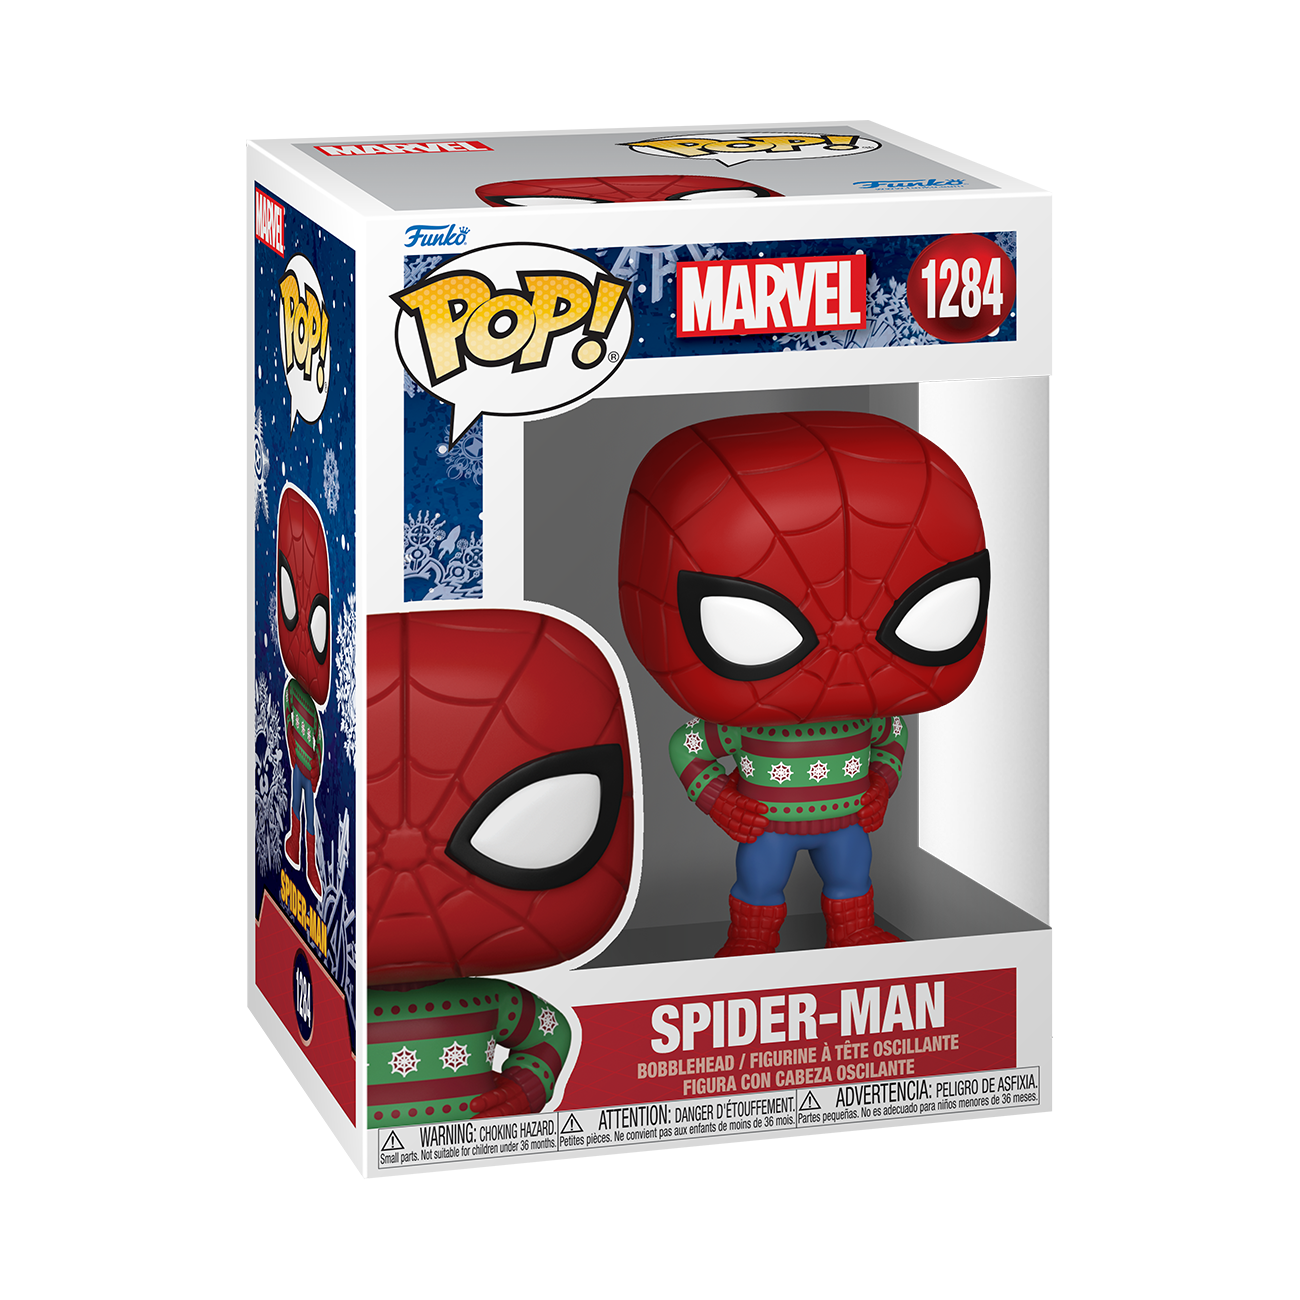 Figurine Spider-Man / The Animated Series Spider-man / Funko Pop